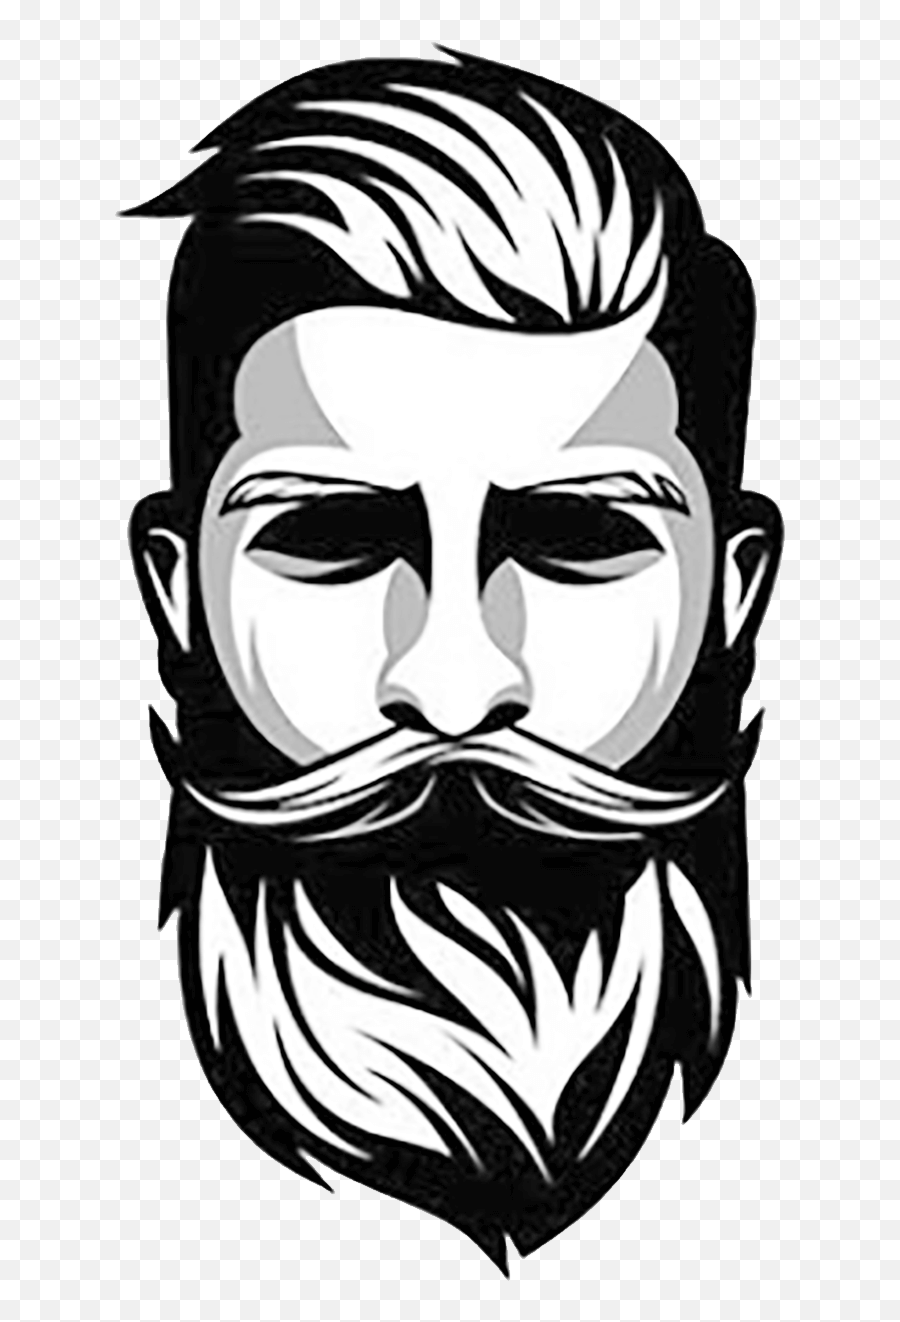 Beard Png Transparent Collections - Beard Logo,Santa Beard Transparent Background